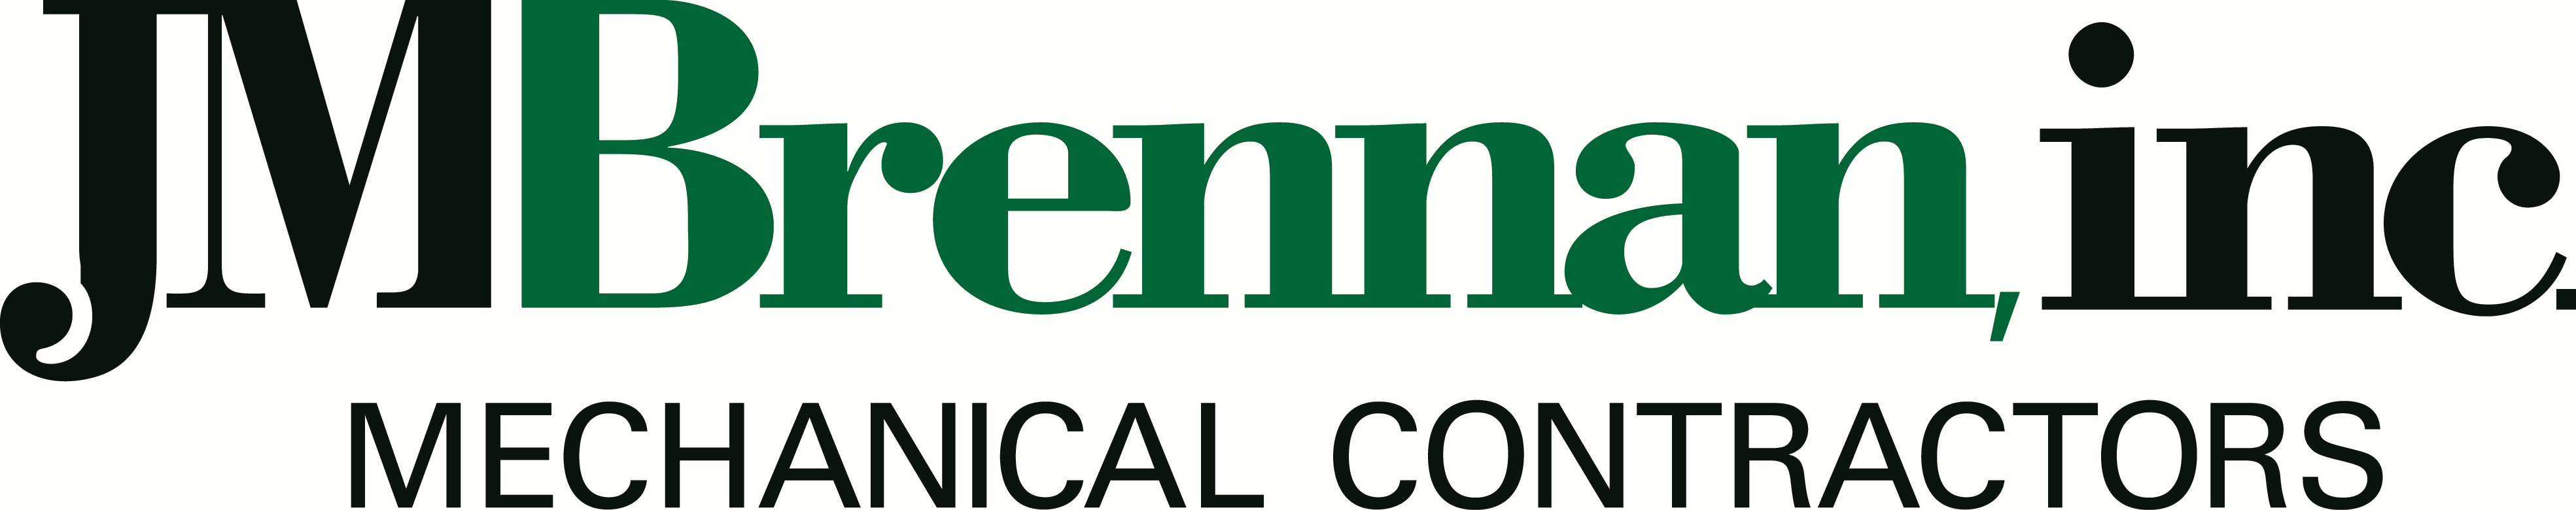 J M Brennan, Inc. logo